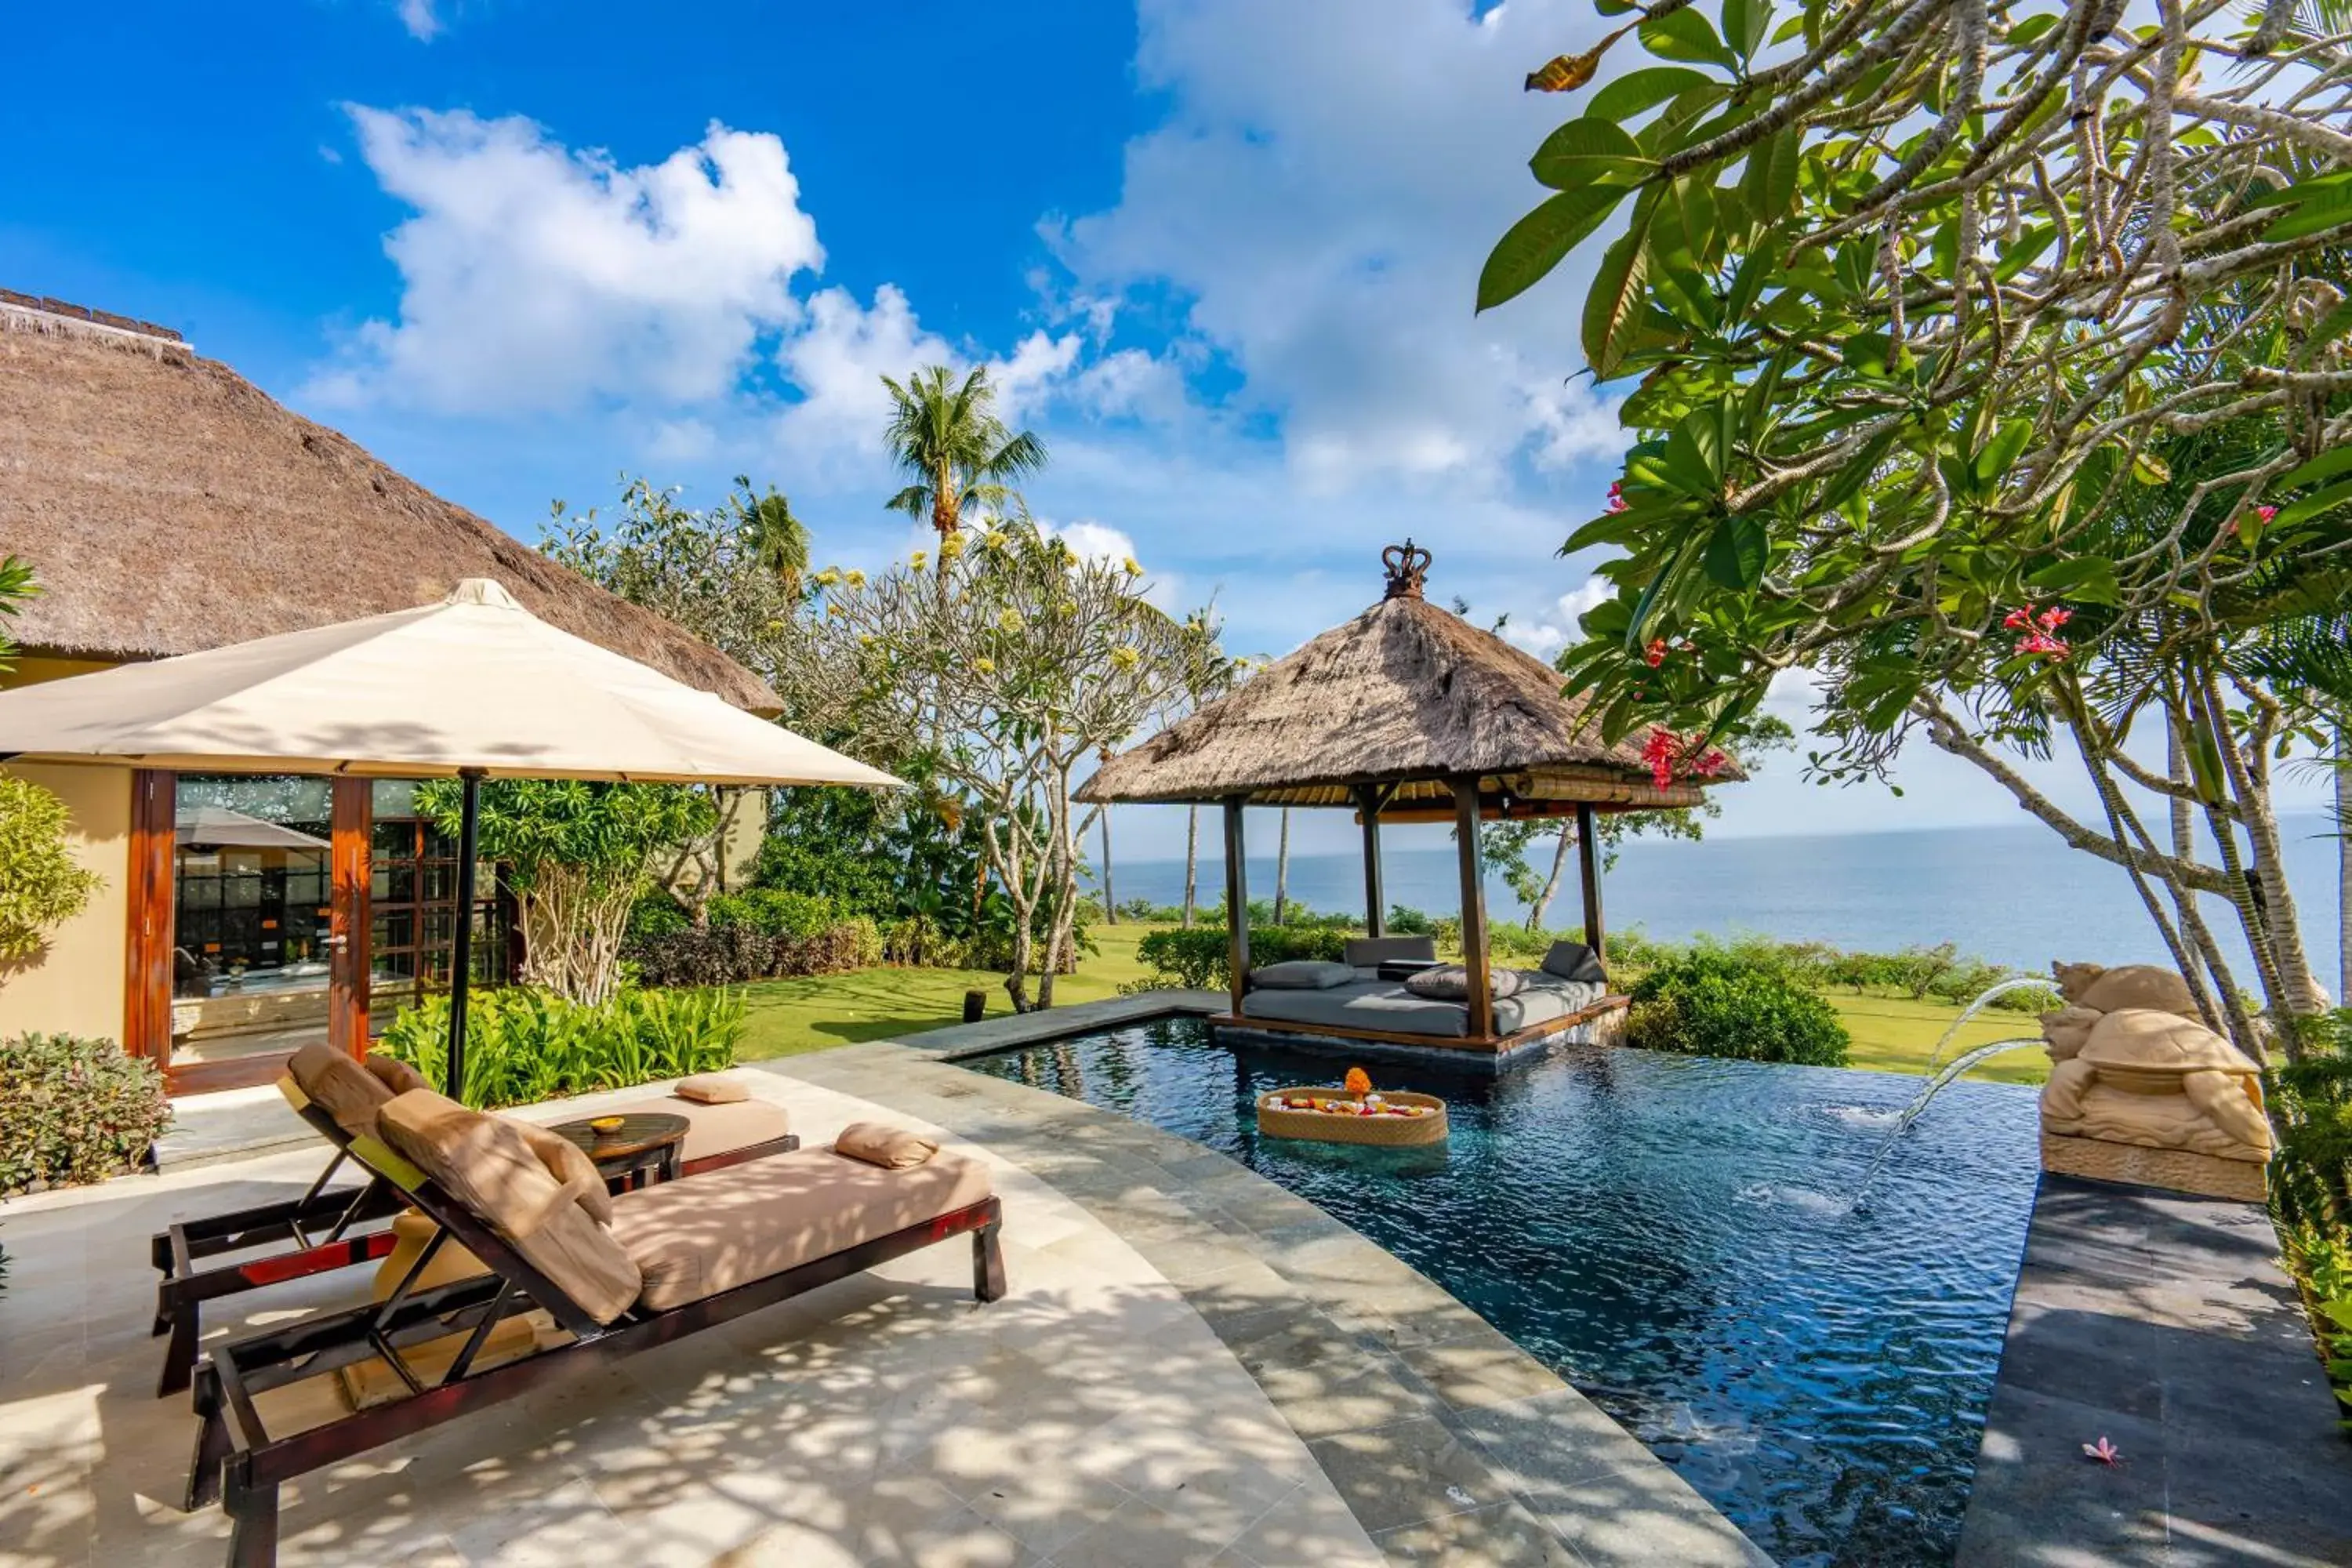 Sea view in AYANA Villas Bali